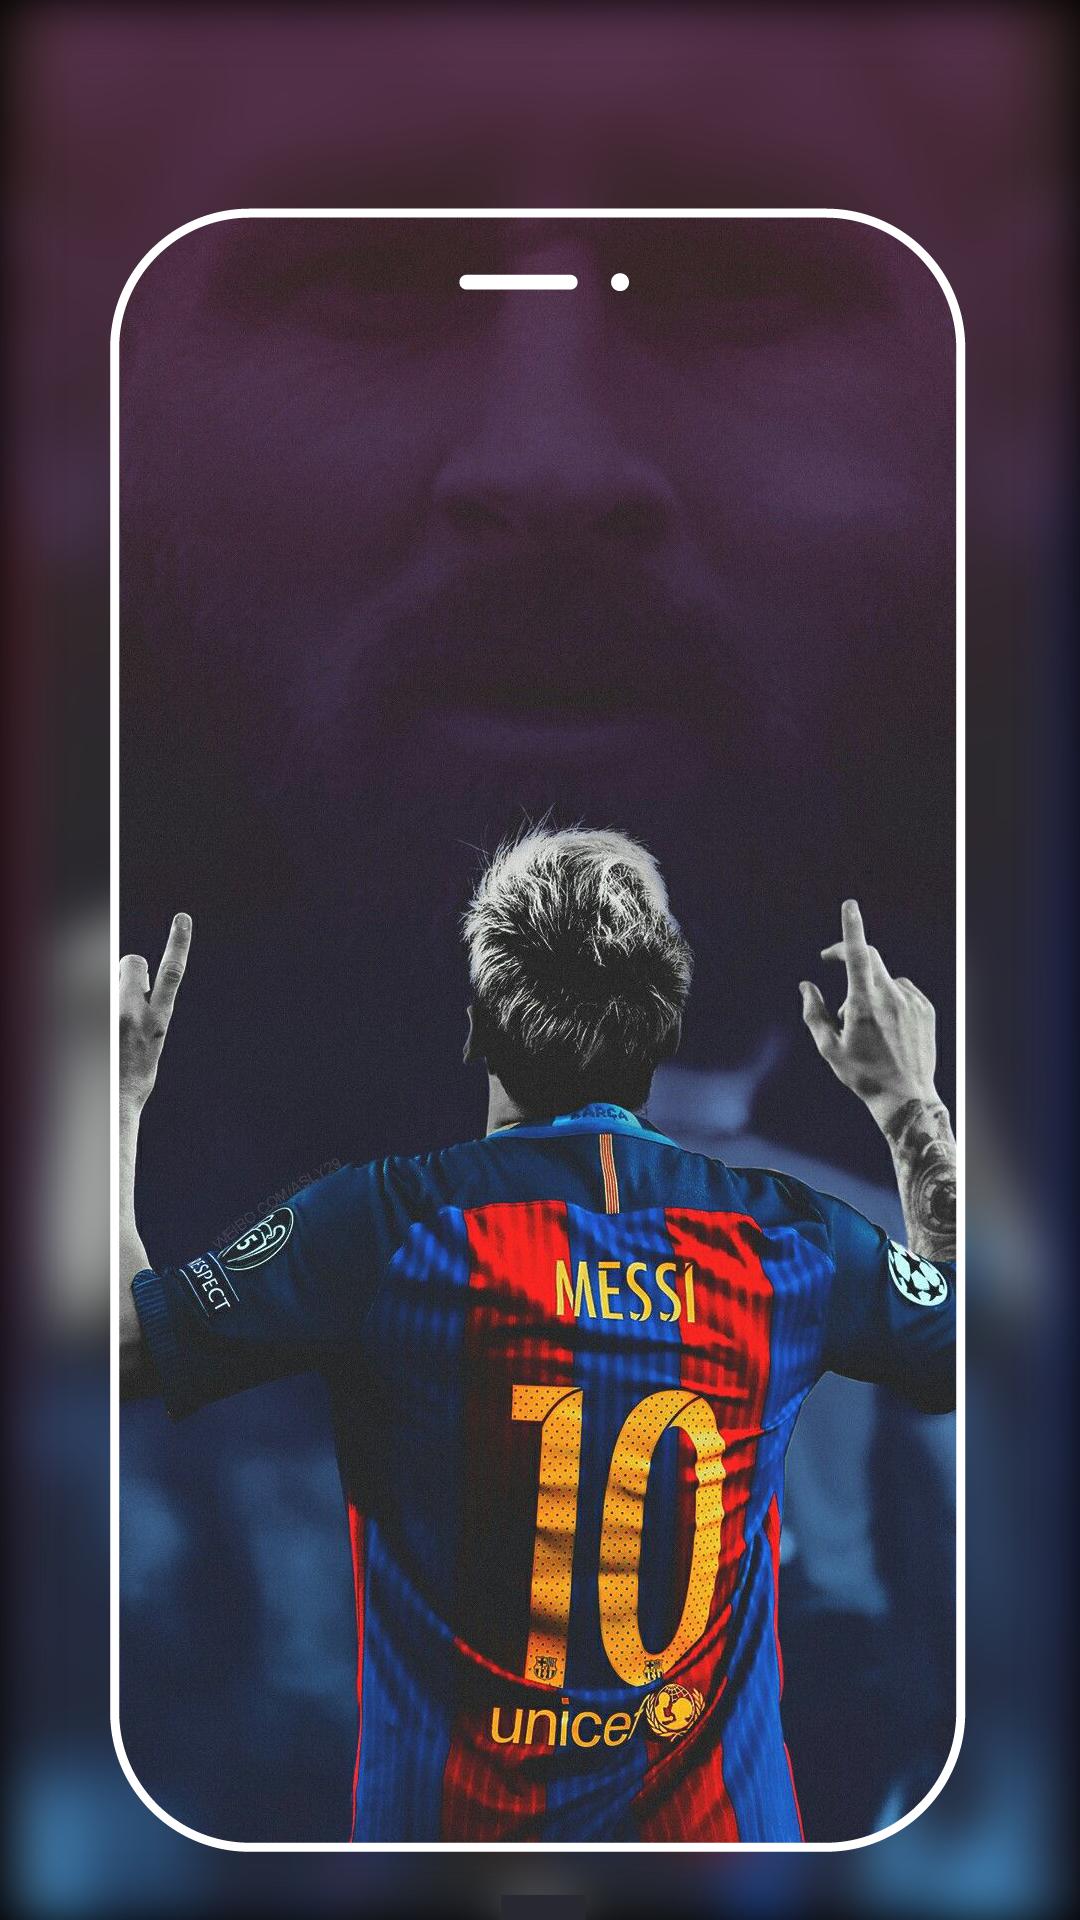 Một bức ảnh nền 4k chất lượng cao của Messi sẽ khiến điện thoại Android của bạn trở nên đẹp hơn bao giờ hết! Xem hình, bạn sẽ cảm nhận được tình yêu và niềm đam mê của người hâm mộ dành cho tiền đạo người Argentina này.